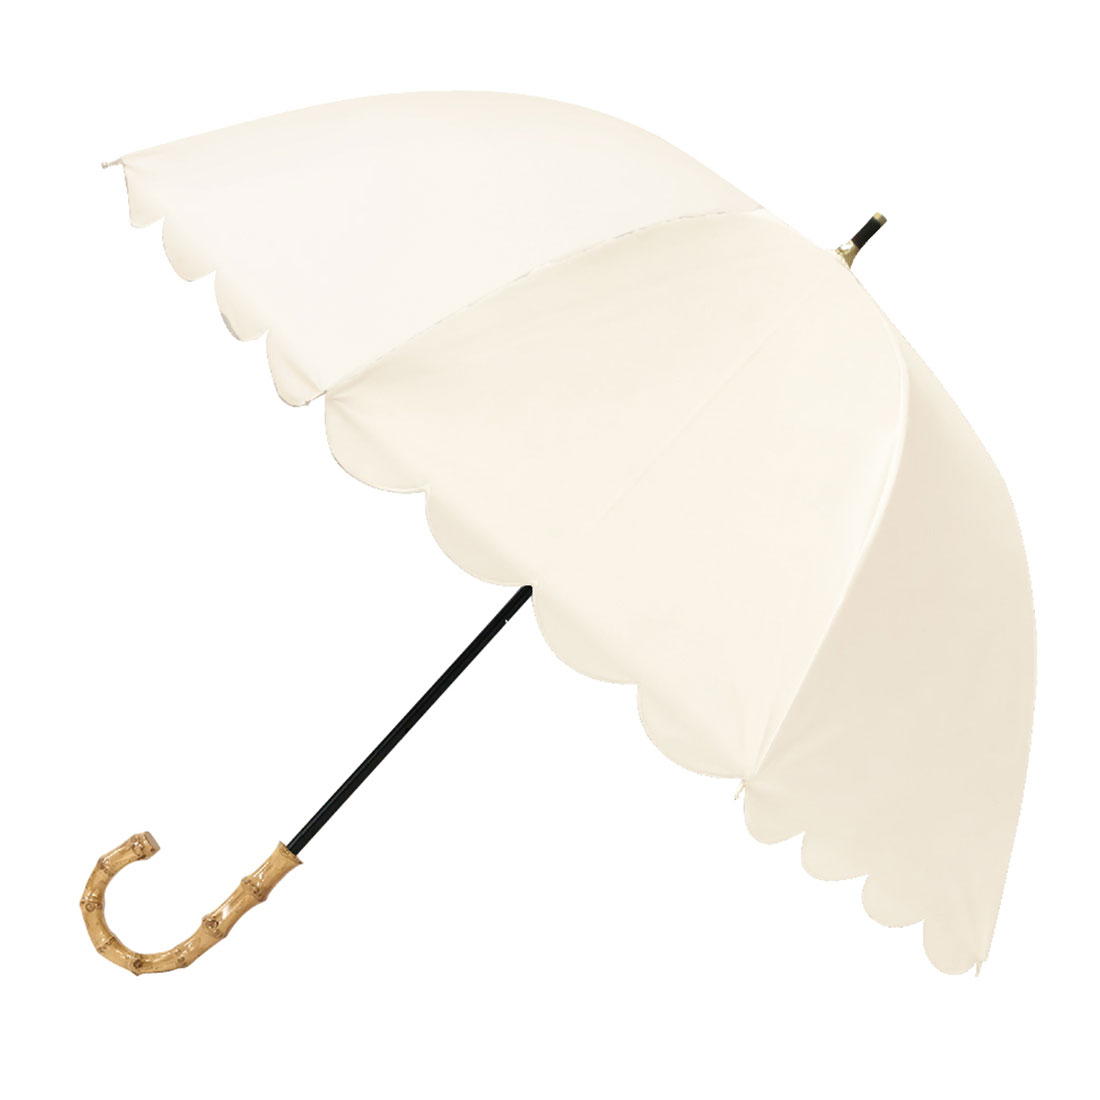 日傘 完全遮光 長傘 晴雨兼用 かわいい レディース スカラップ ドーム型 無地 2段 50cm 深...